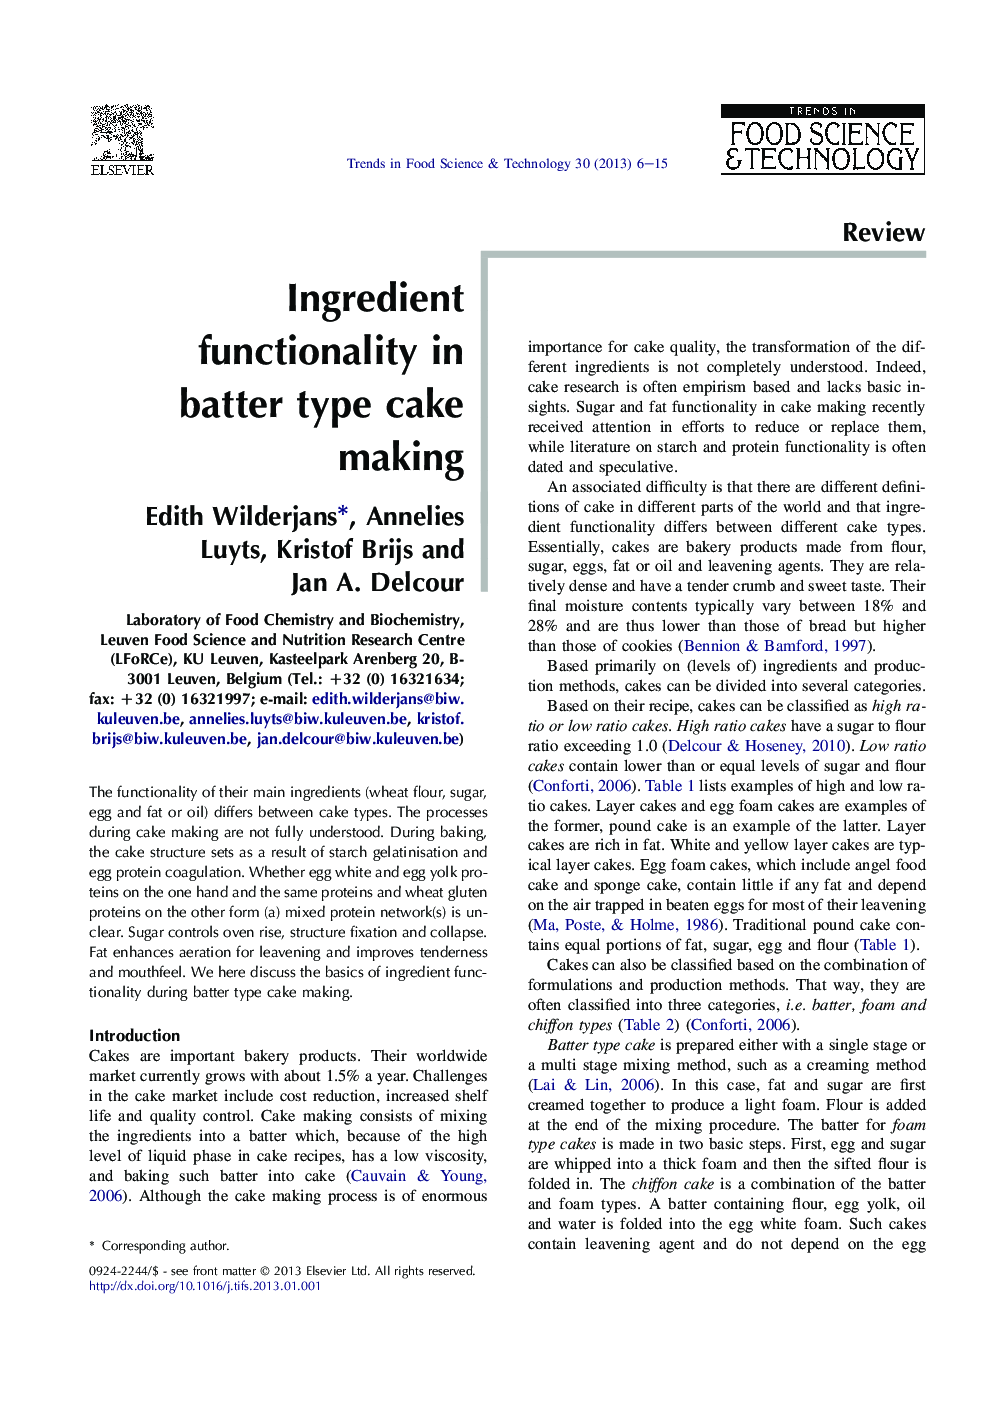 Ingredient functionality in batter type cake making